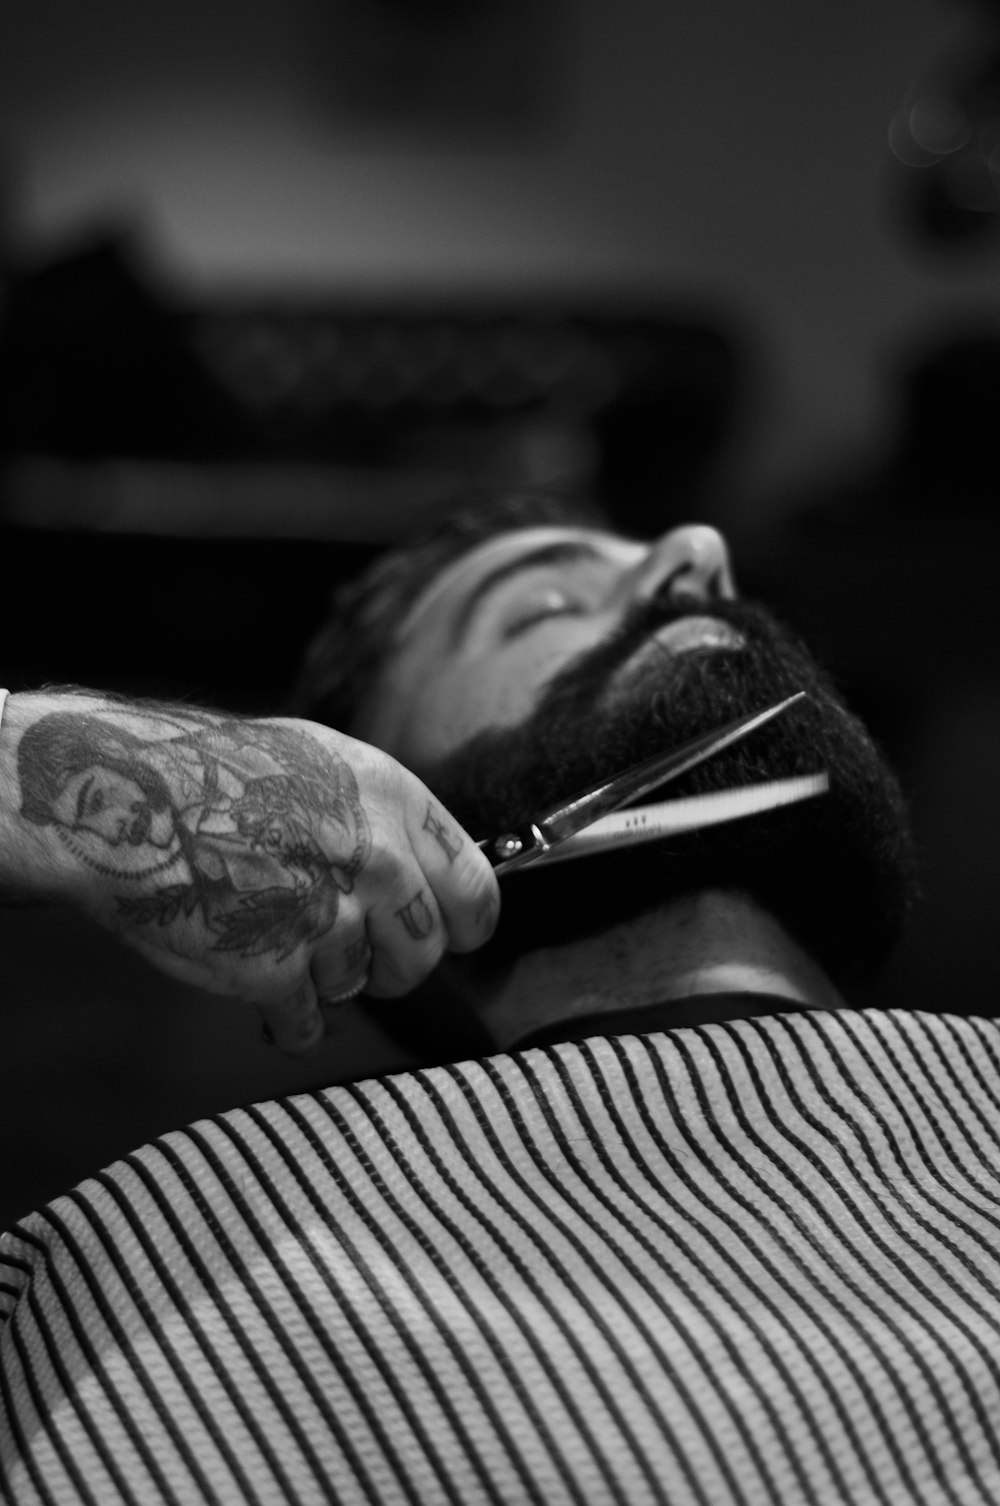 Fotografía en escala de grises de una persona que sostiene una tijera recortando la barba del hombre